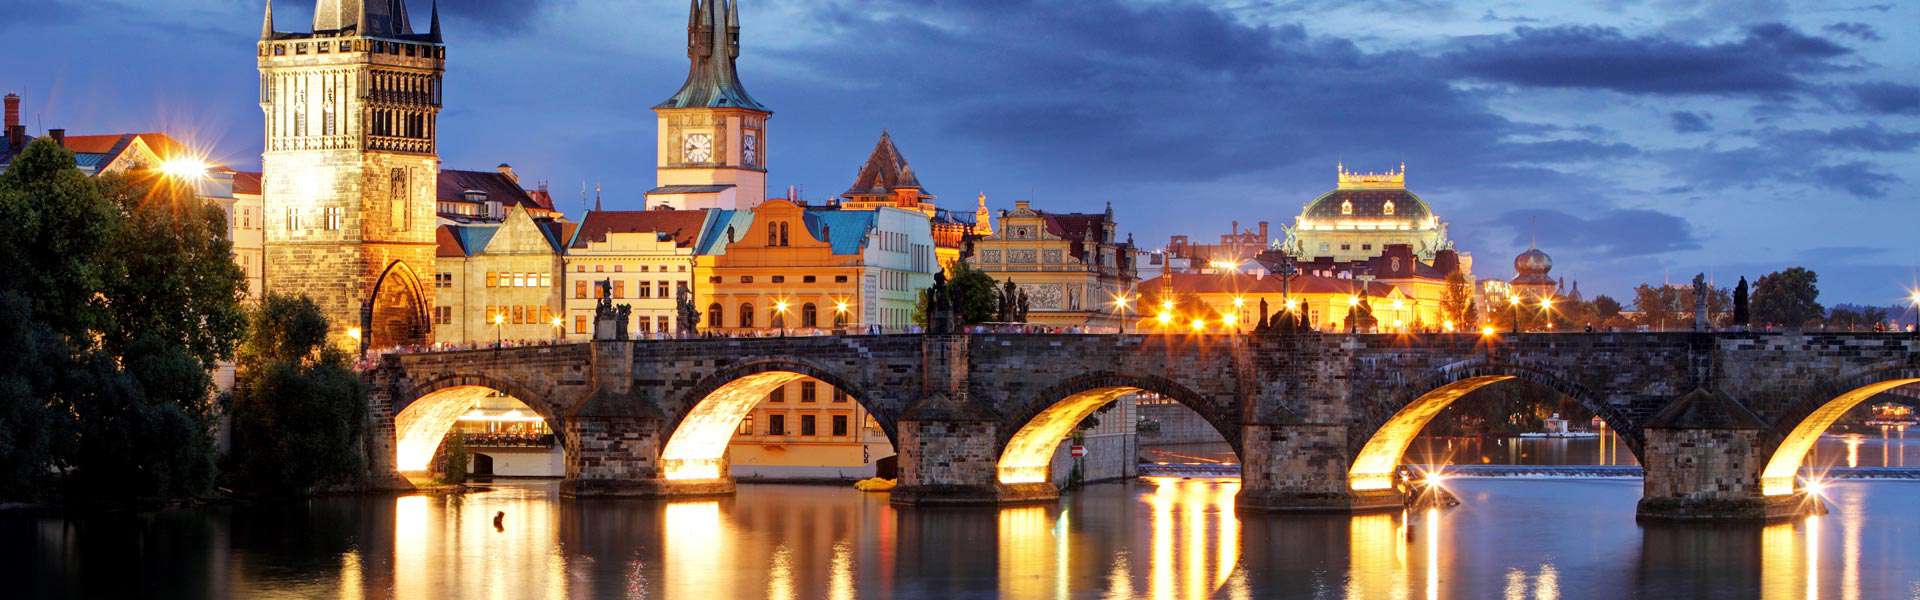 Seit dem 14. Jahrhundert über der Moldau: die Karlsbrücke in Prag